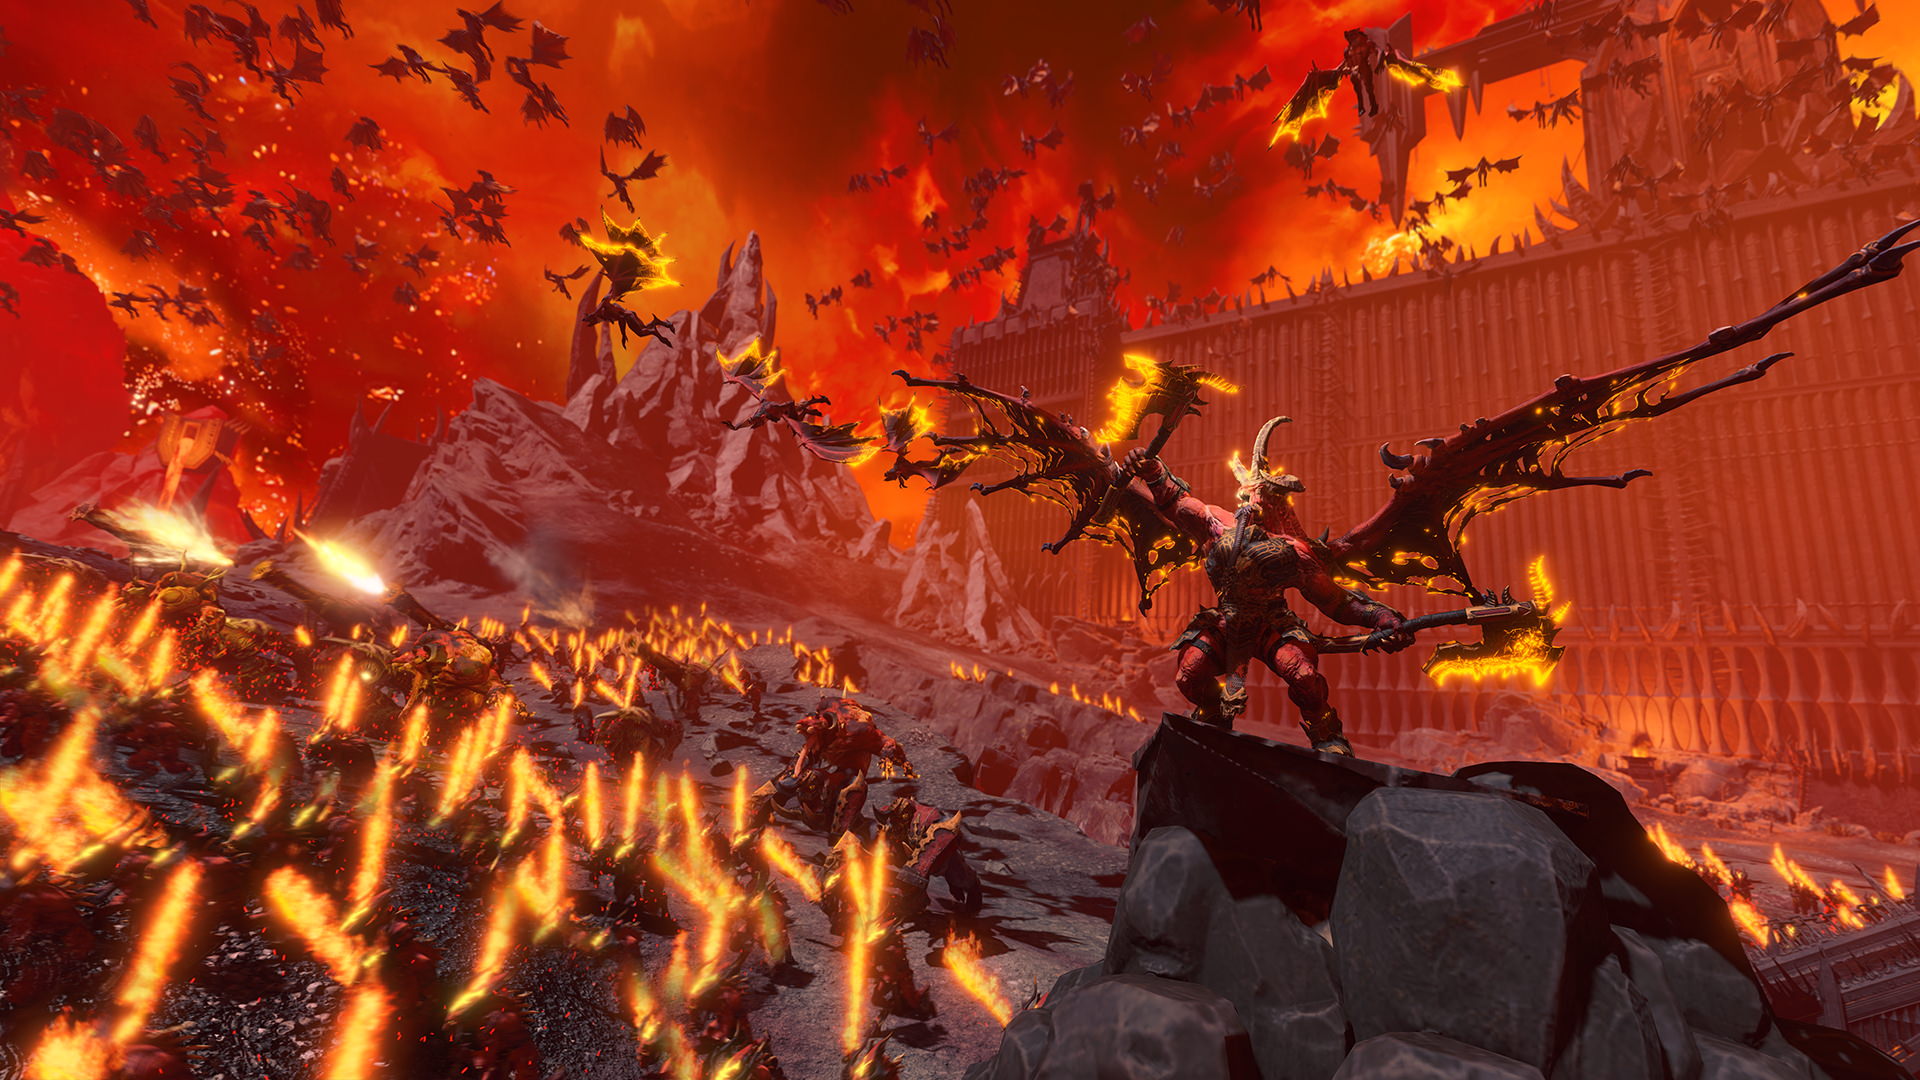 حمله شیاطین به دشمنان در تریلر جدید بازی Total War: Warhammer 3